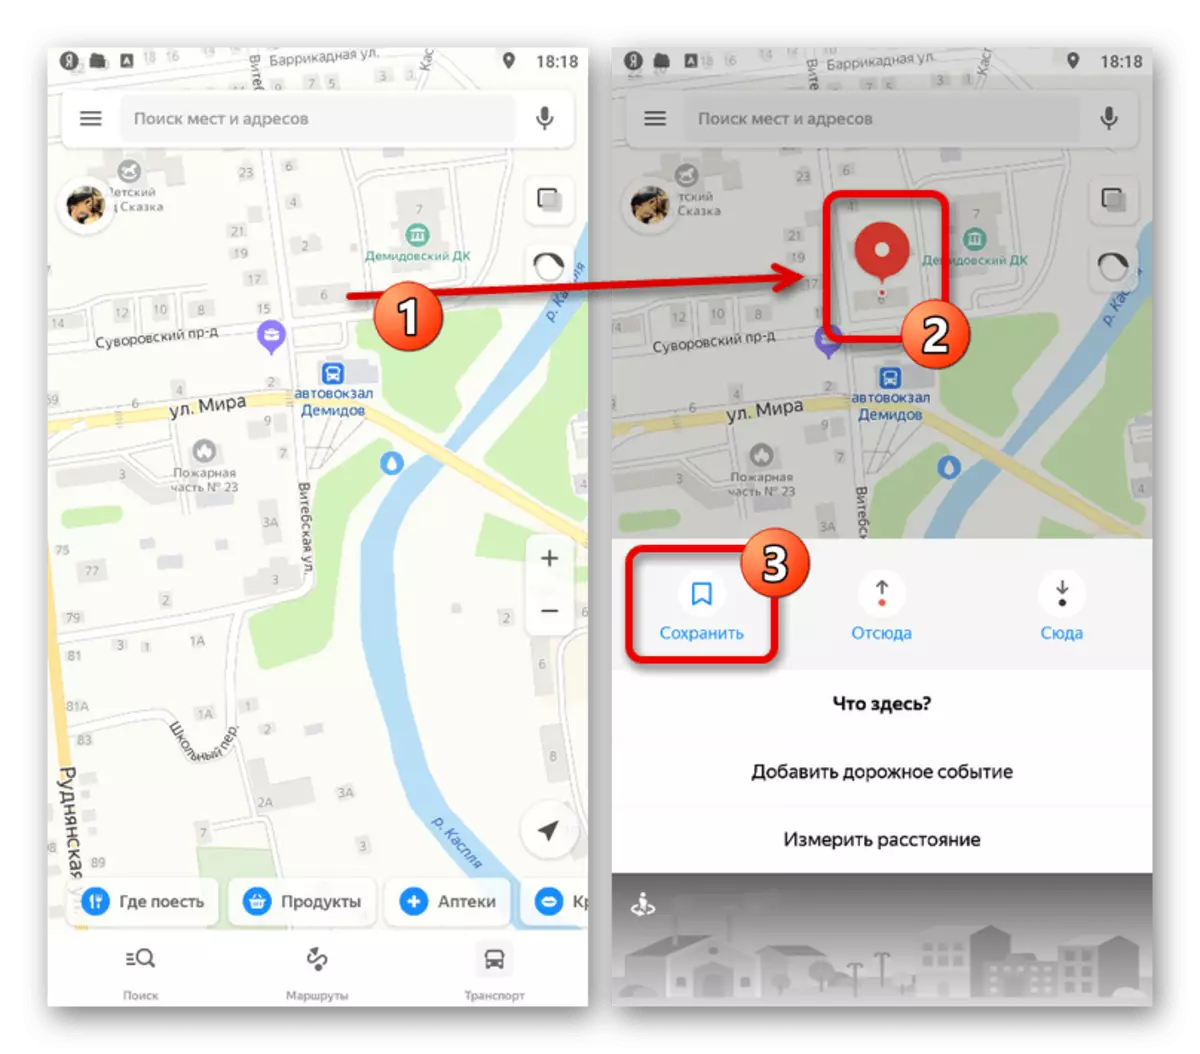 Yandex.maps मध्ये बुकमार्क करण्यासाठी एक लेबल जोडणे